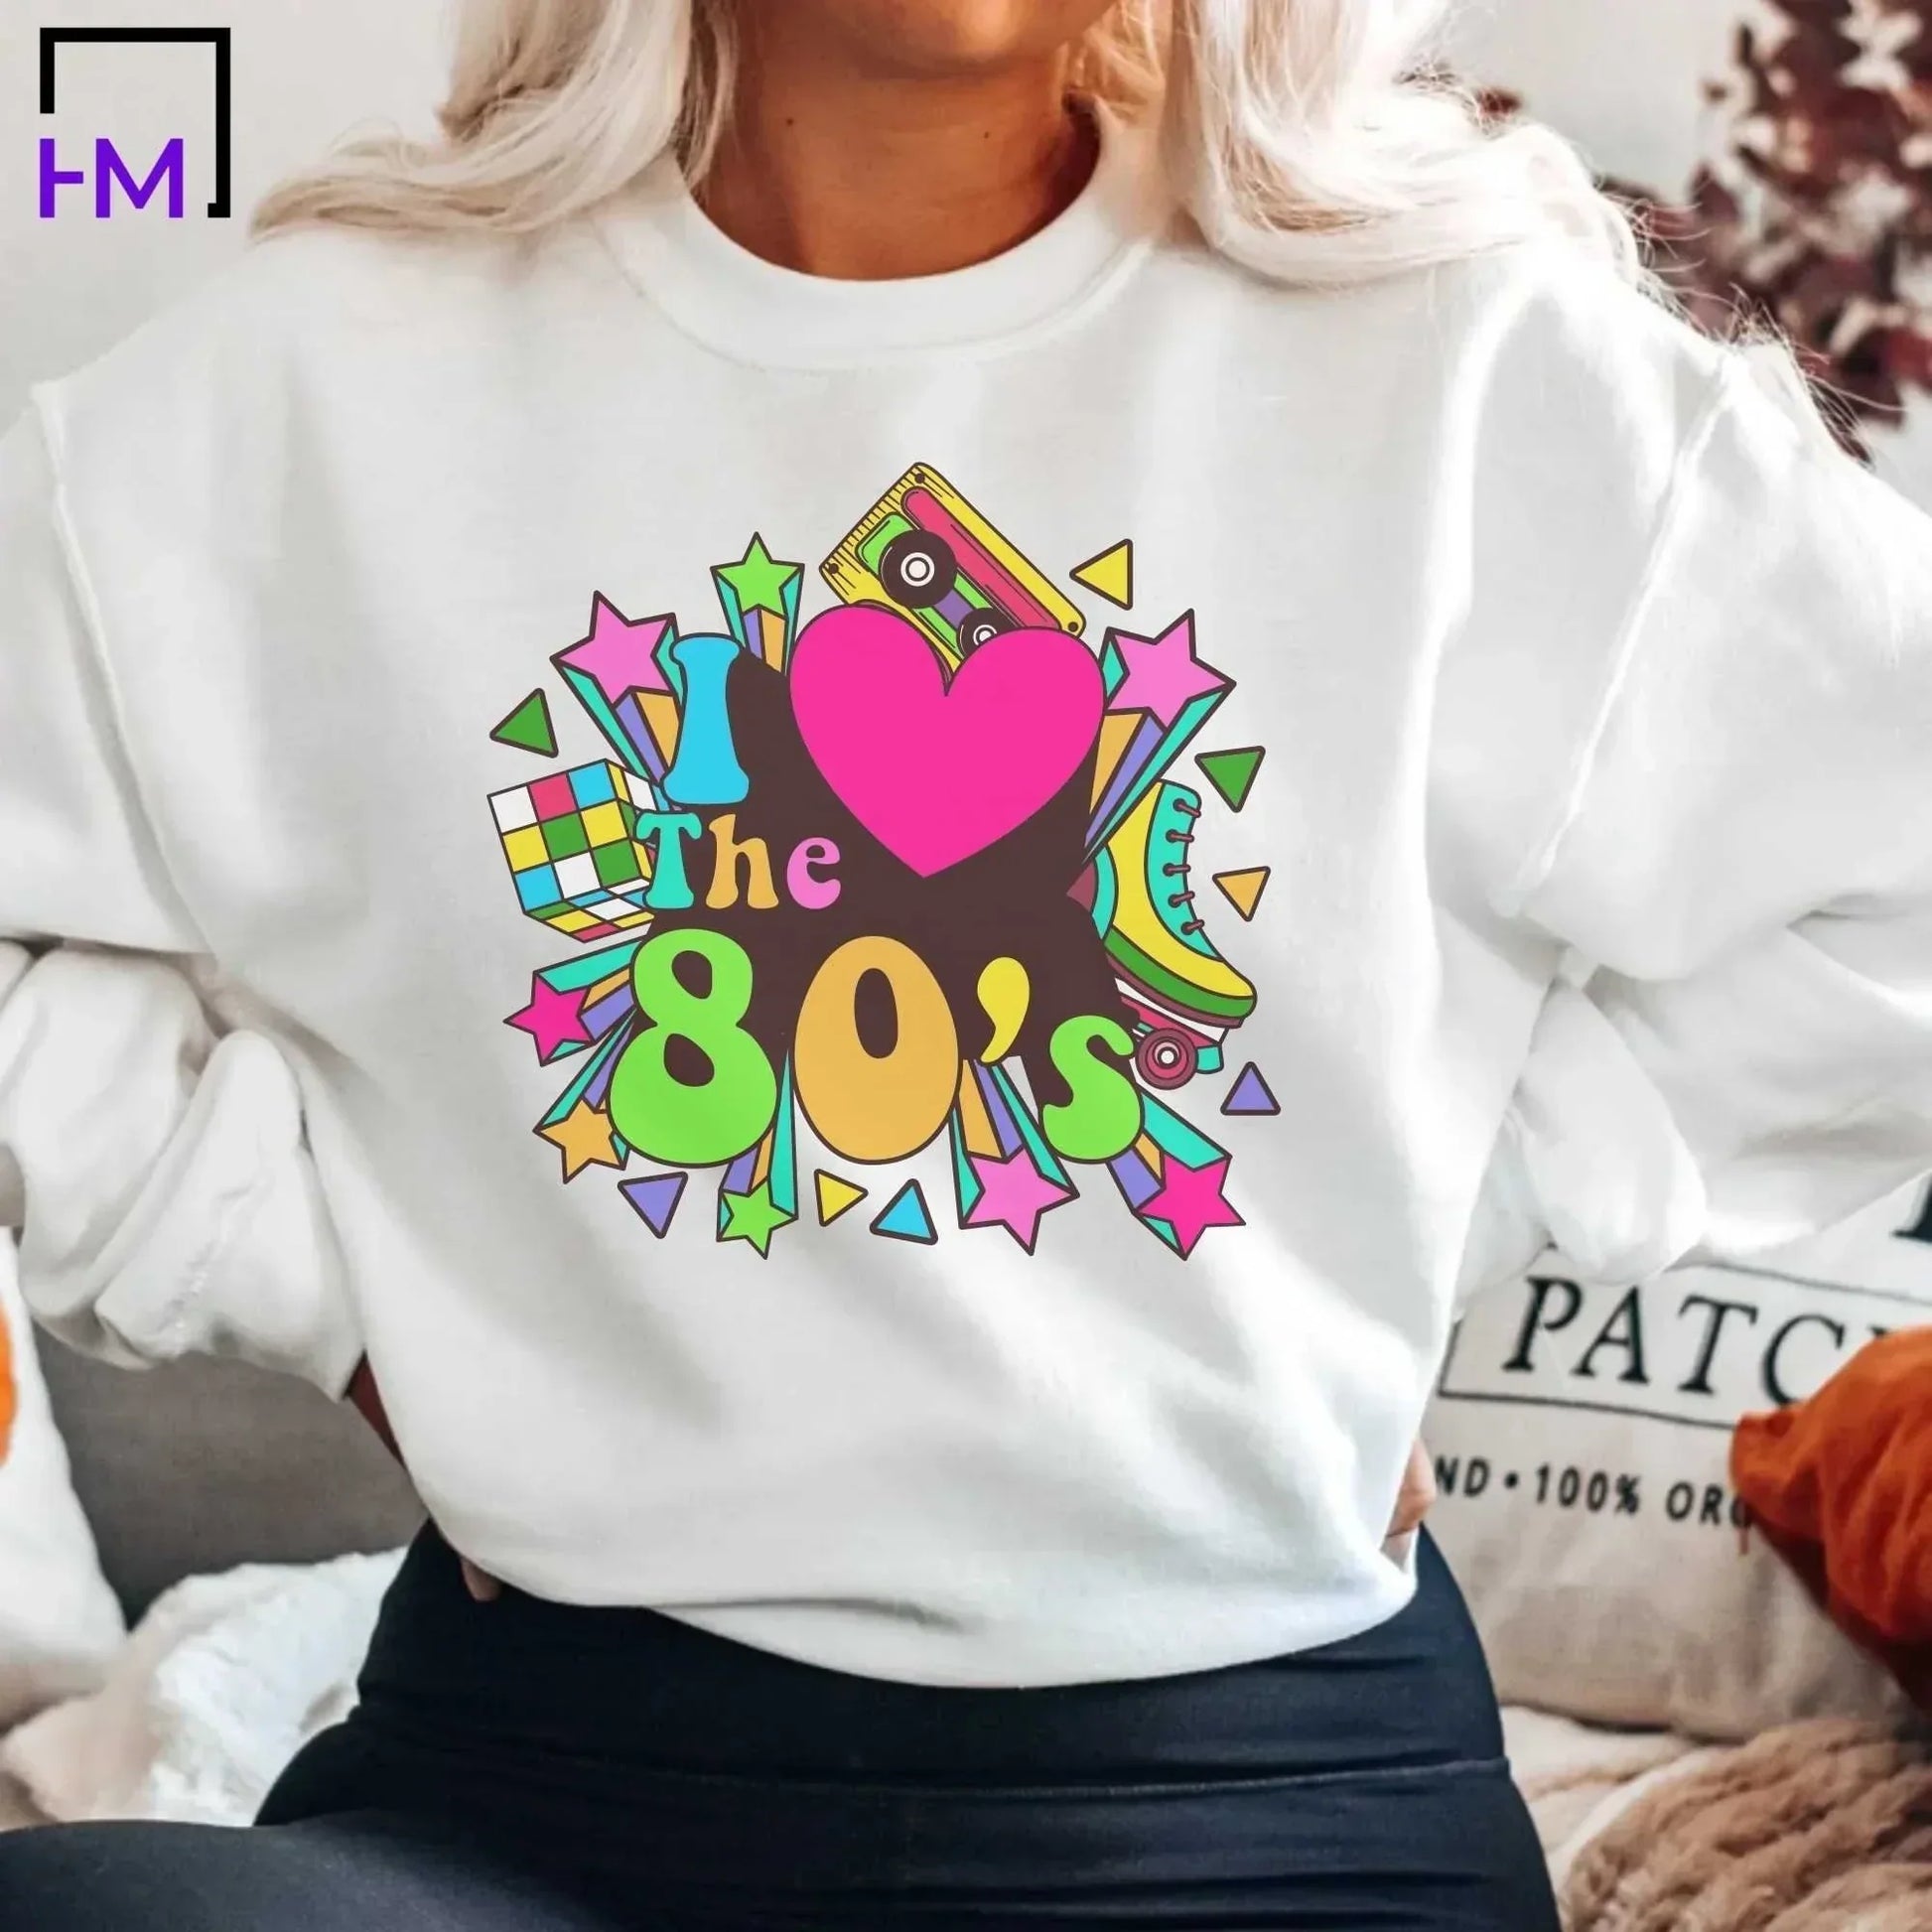 I Love the 80s Shirt, Women's 80s Clothing HMDesignStudioUS